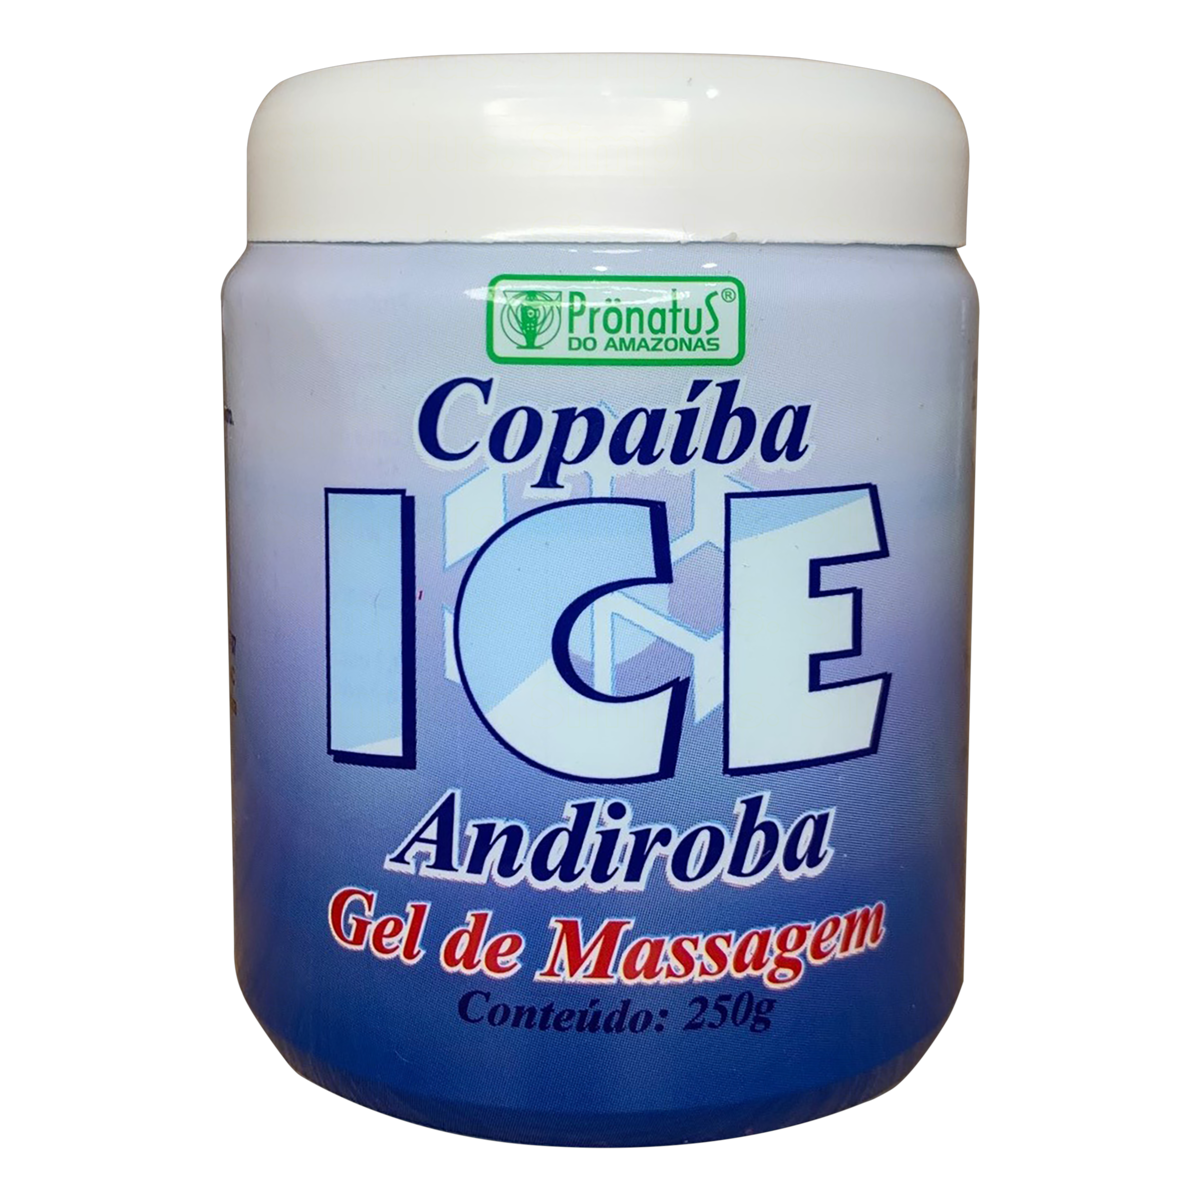 7897344301527 - GEL PARA MASSAGEM DE COPAÍBA E ANDIROBA ICE PRÖNATUS DO AMAZONAS POTE 250G